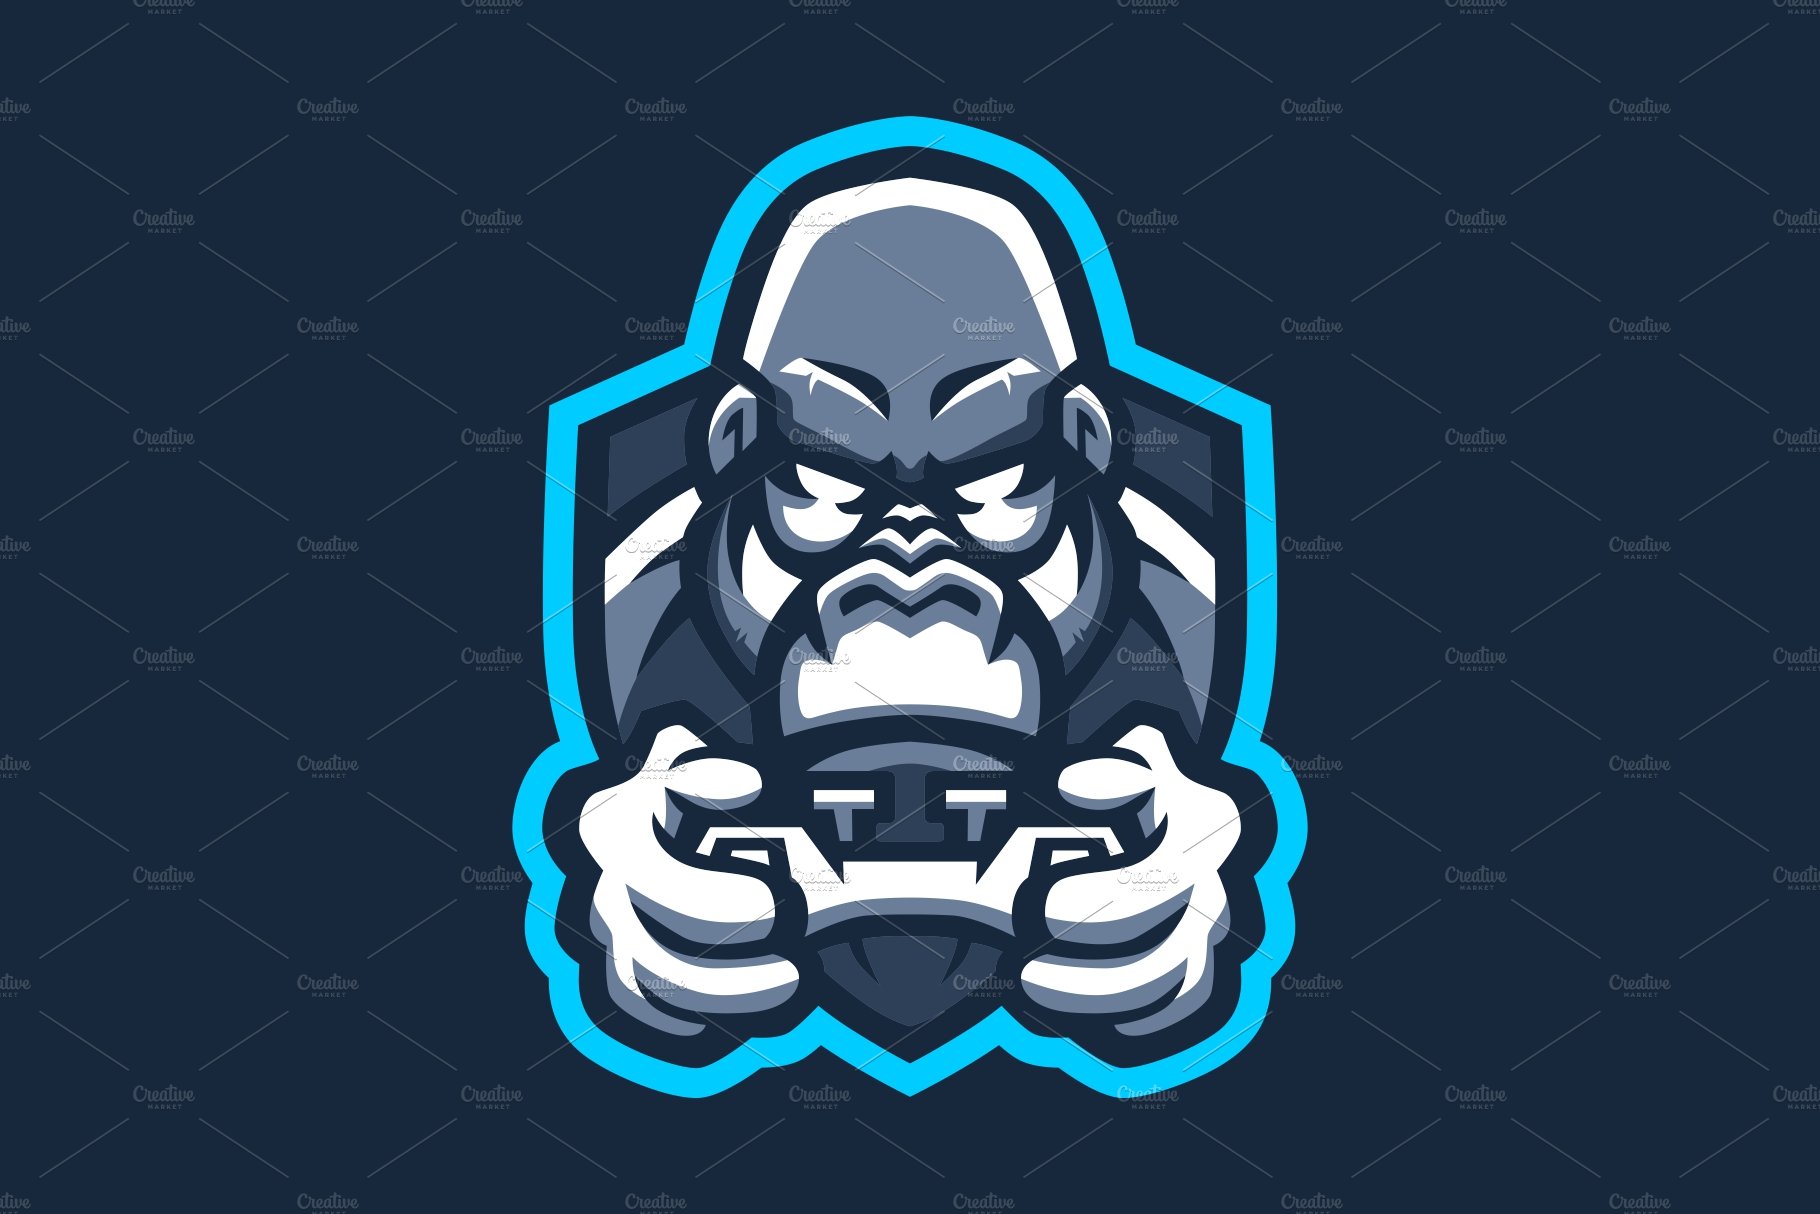 gorilla games e sport joystick logo cover image.